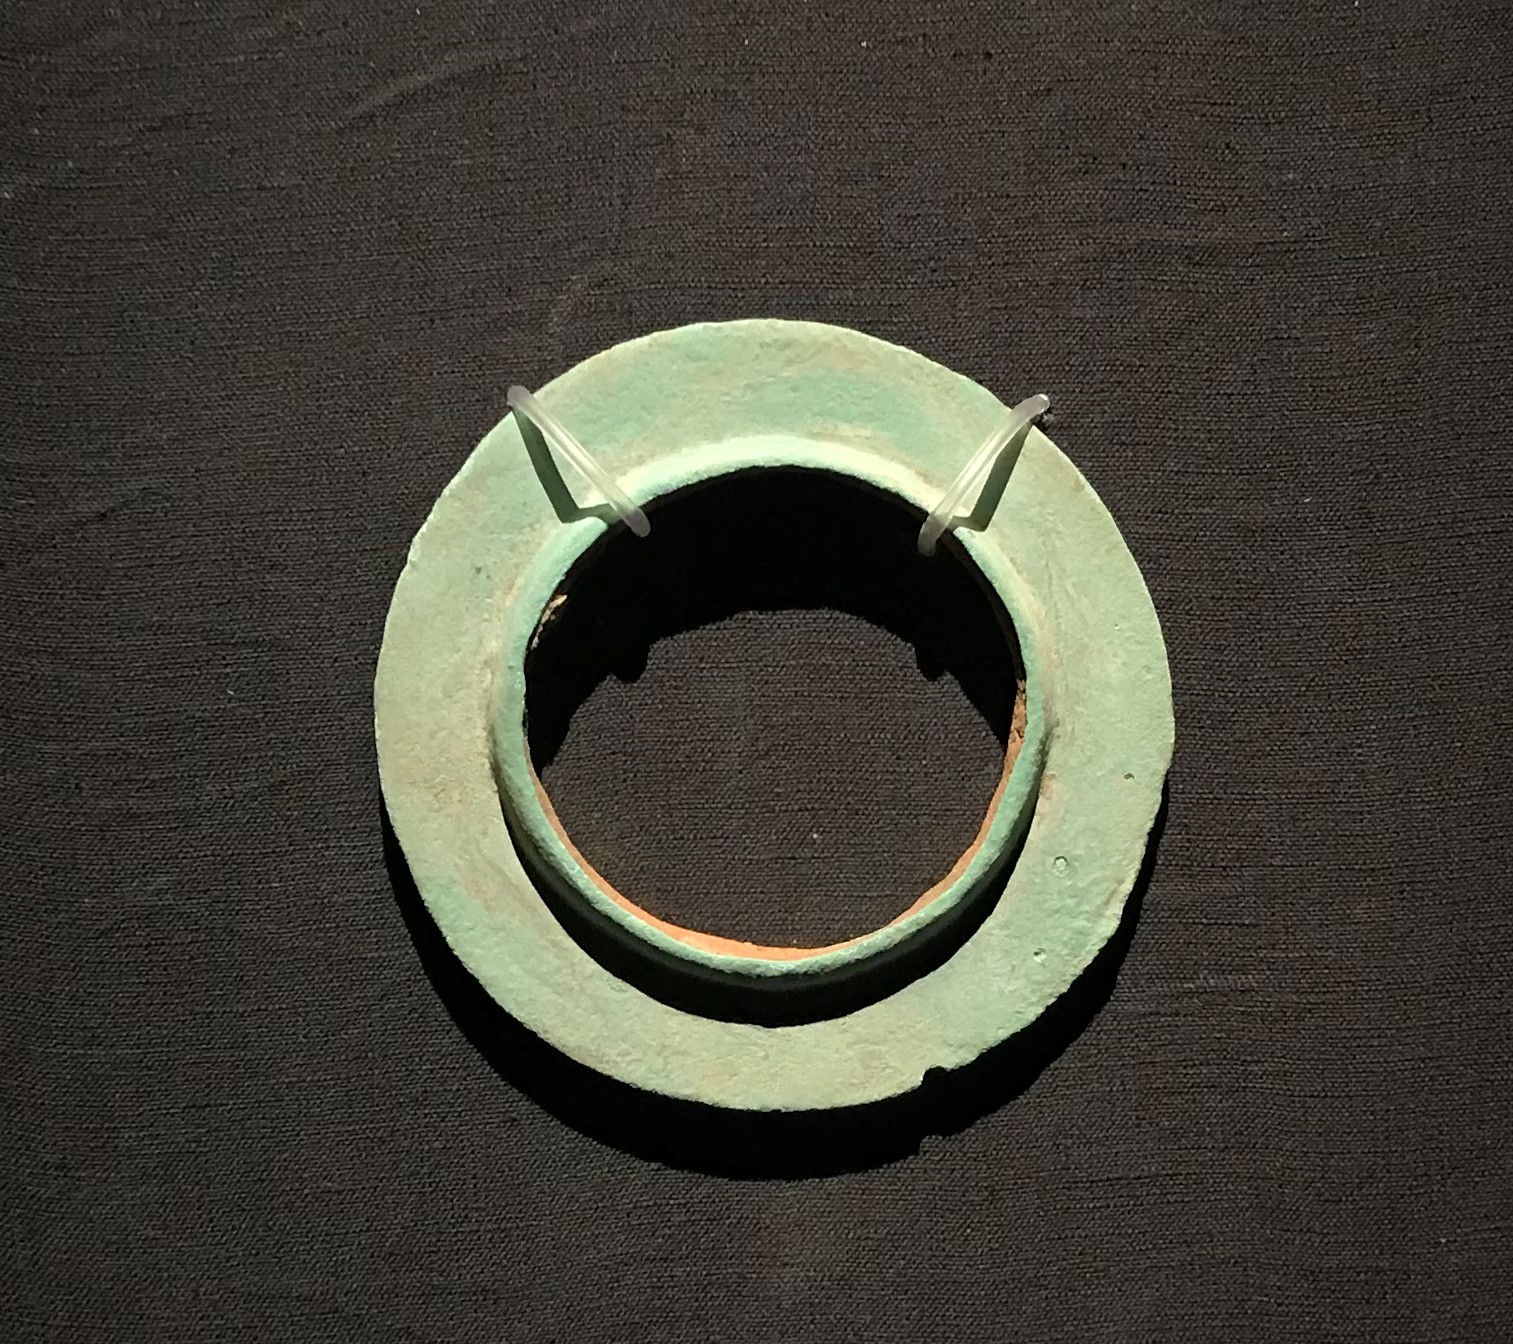 銅有領璧形器-先秦時代-常設展F２-成都博物館